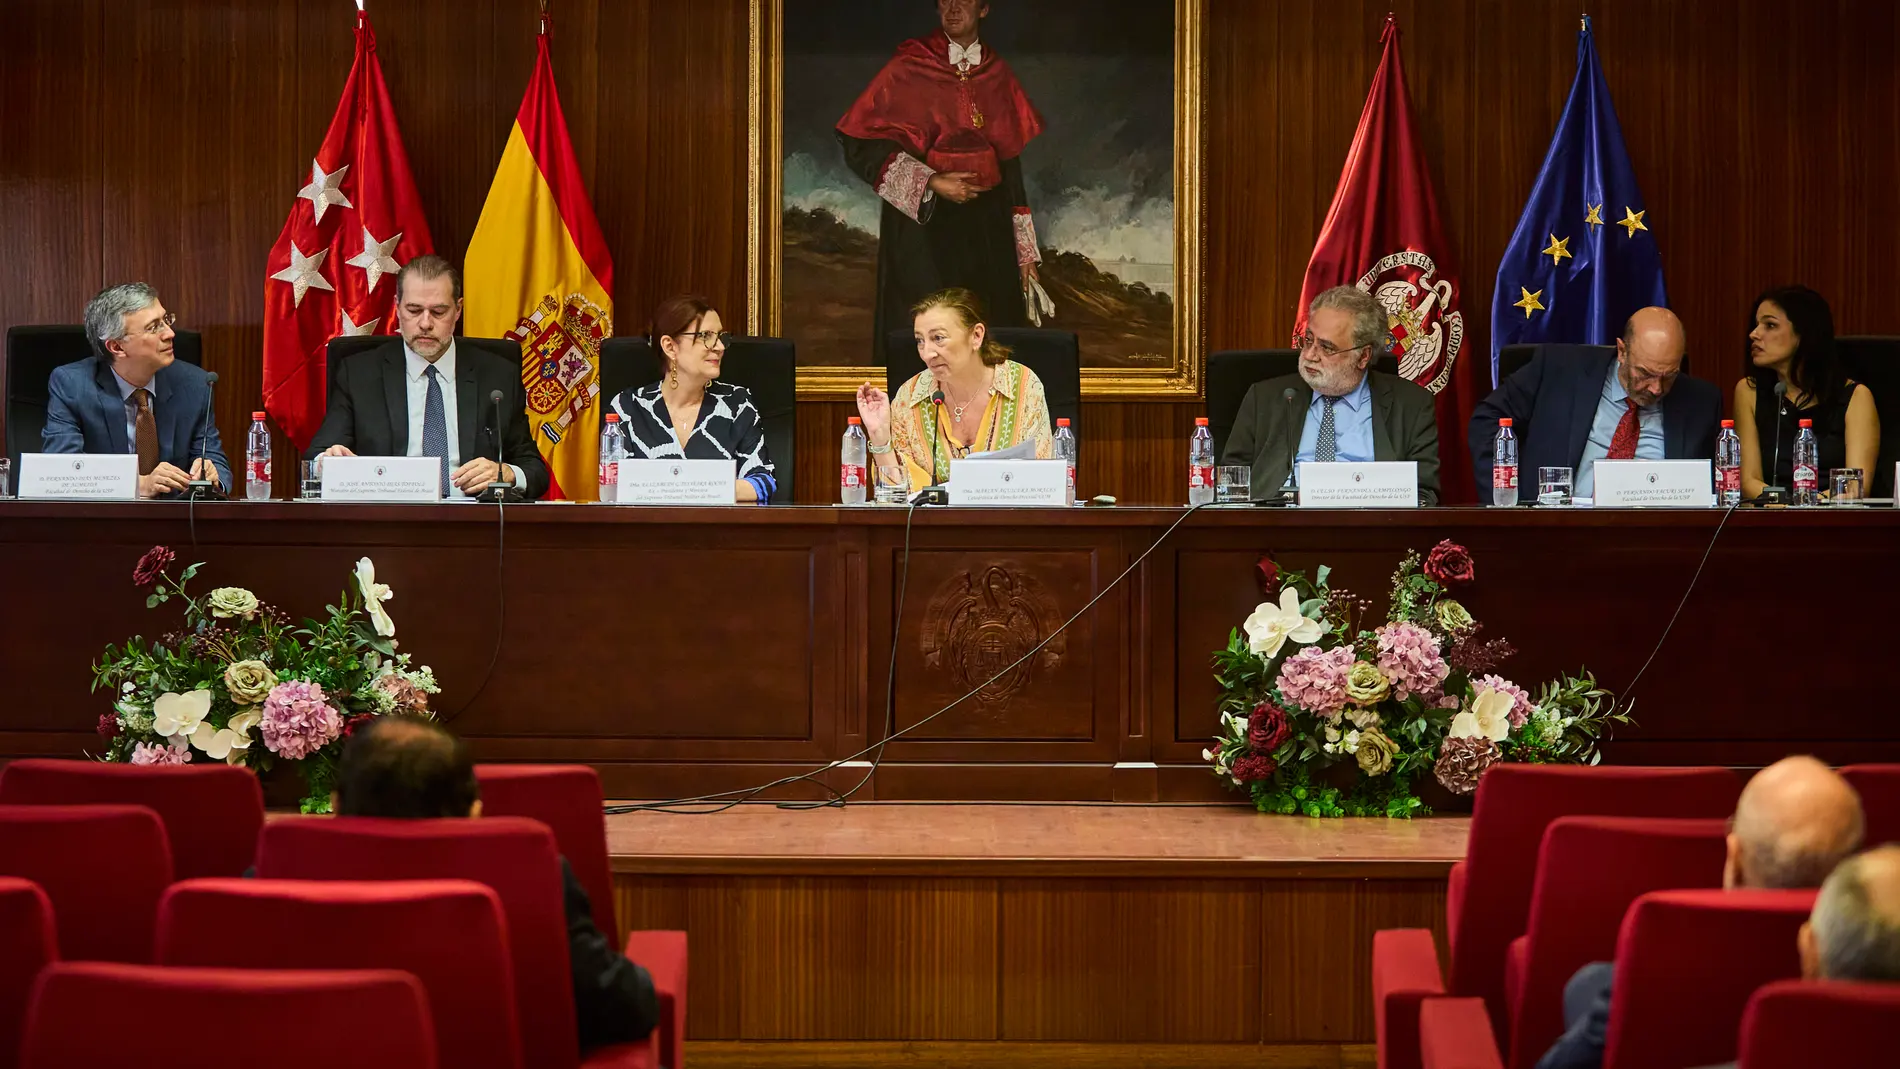 IV Congreso Internacional de la Unión Iberoamericana de Universidades y Cortes Supremas